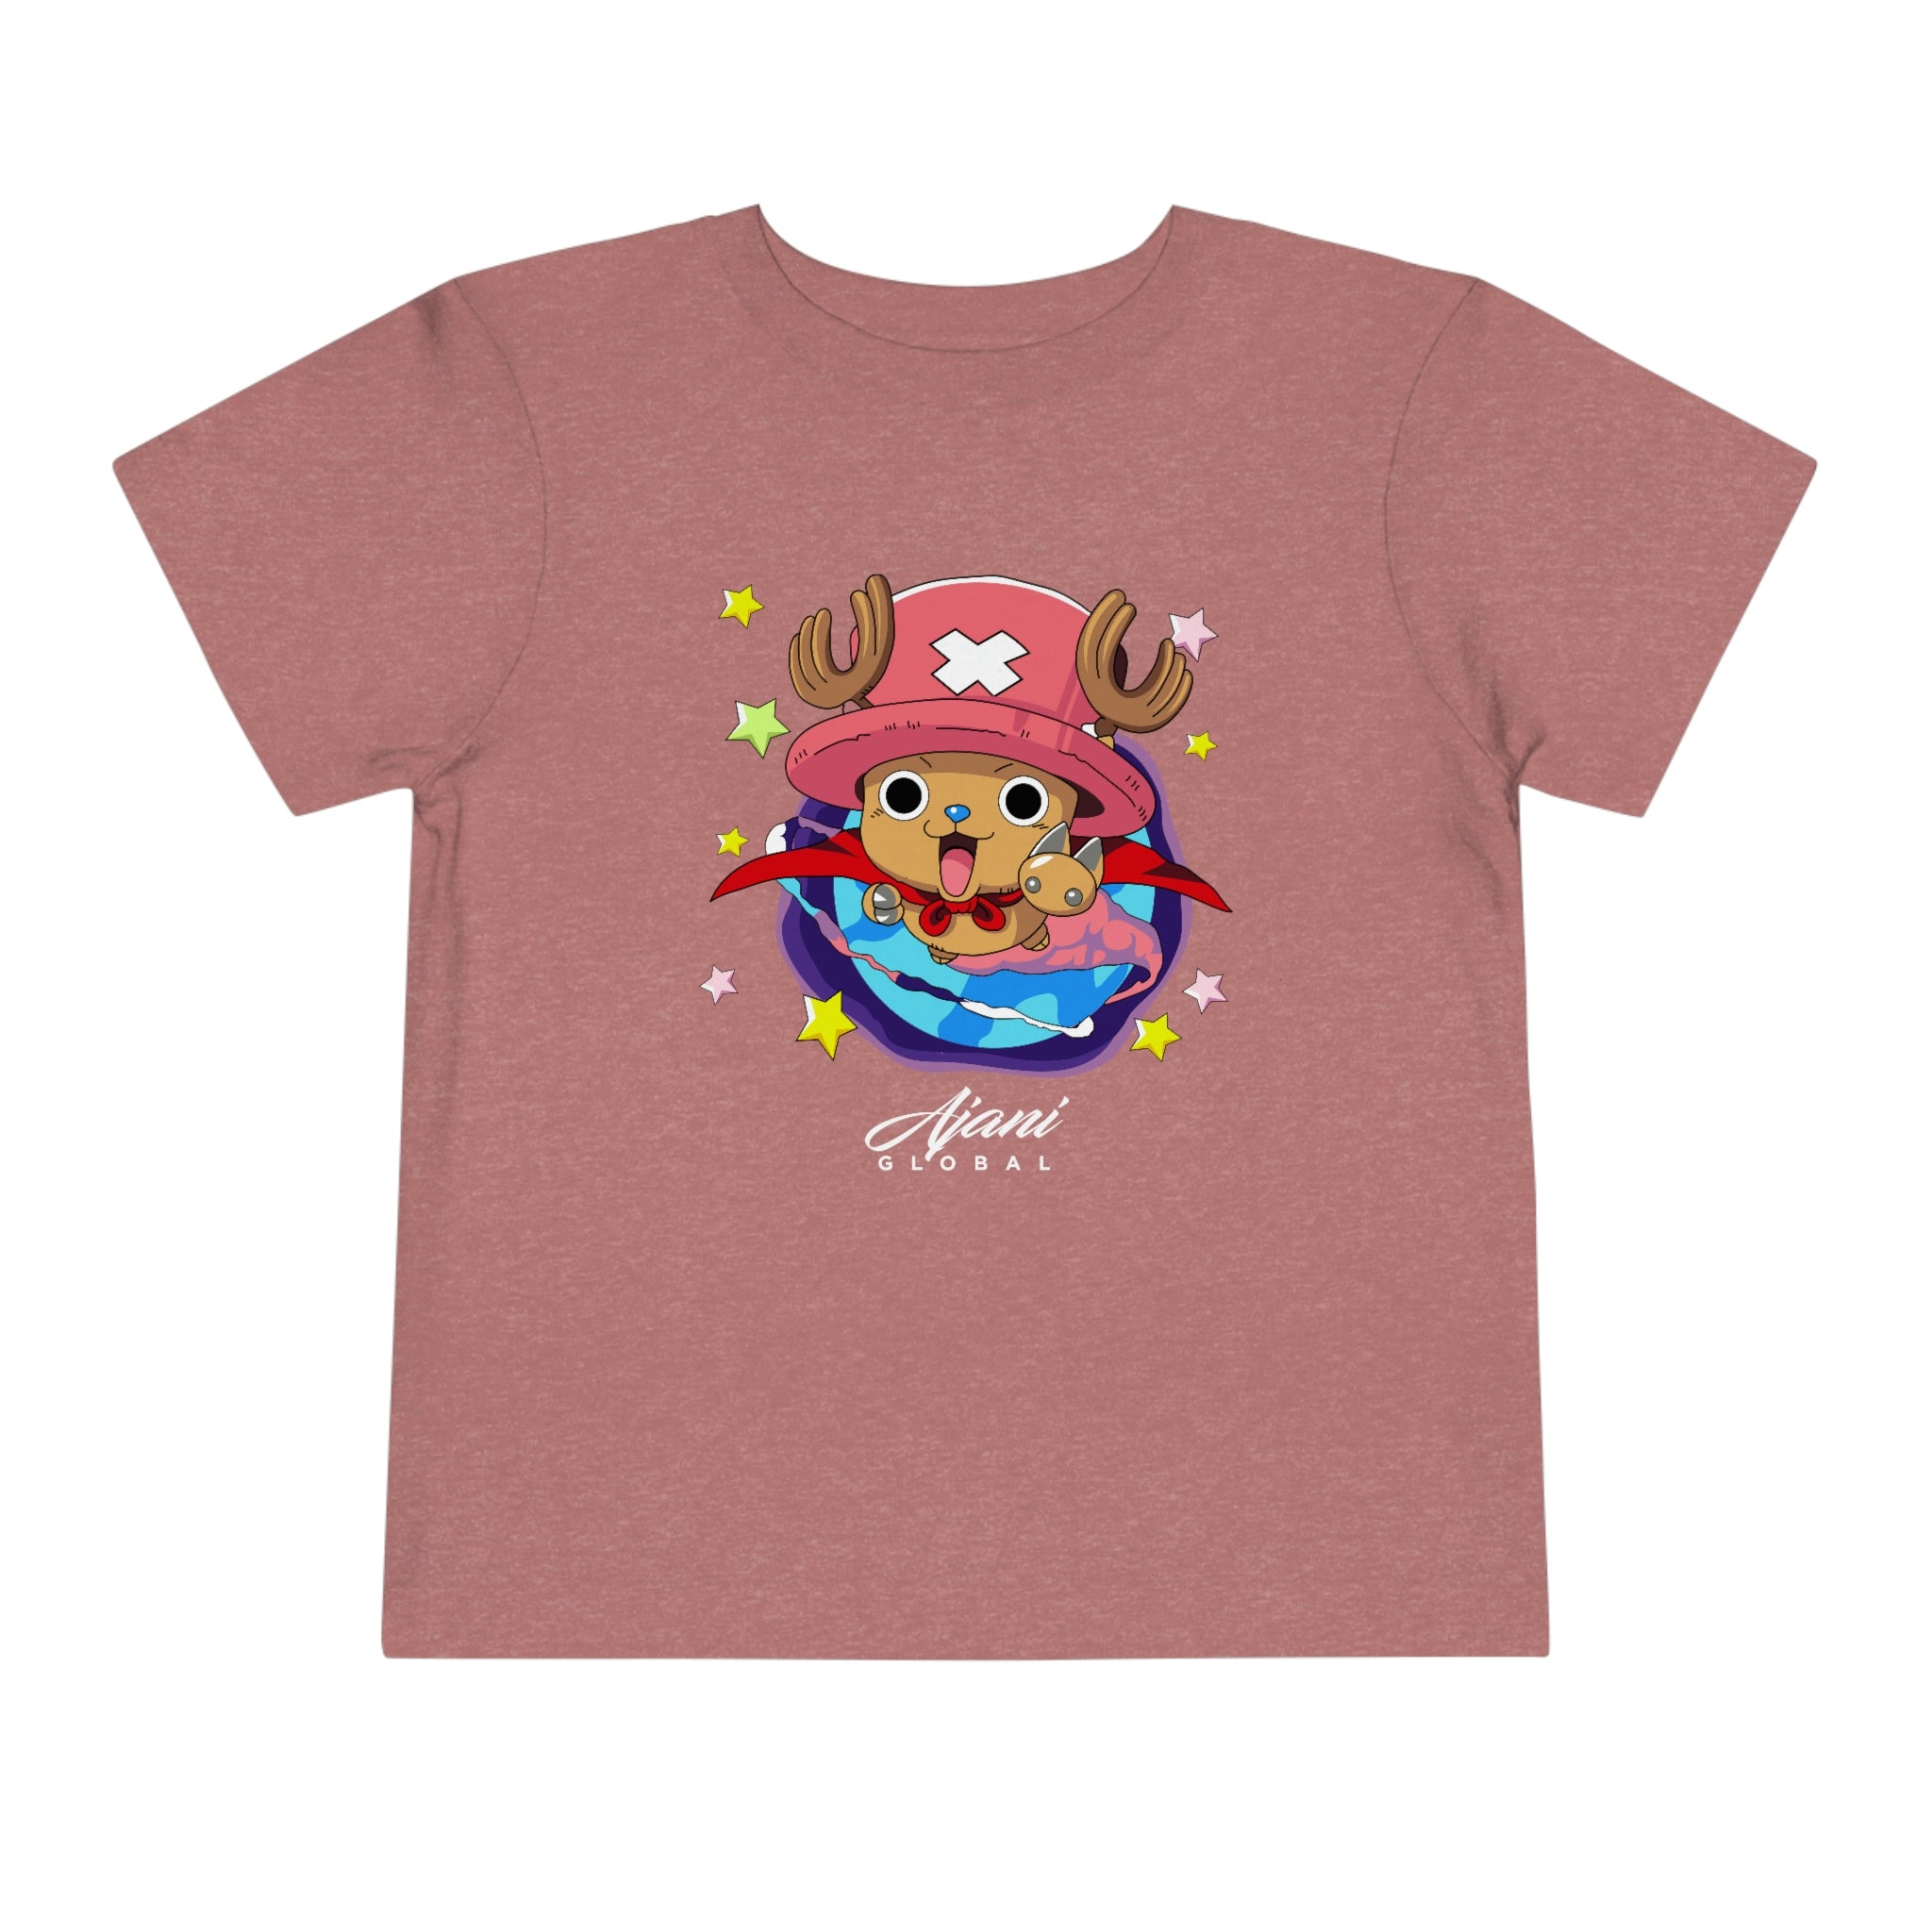 Chopper Toddler T-Shirt